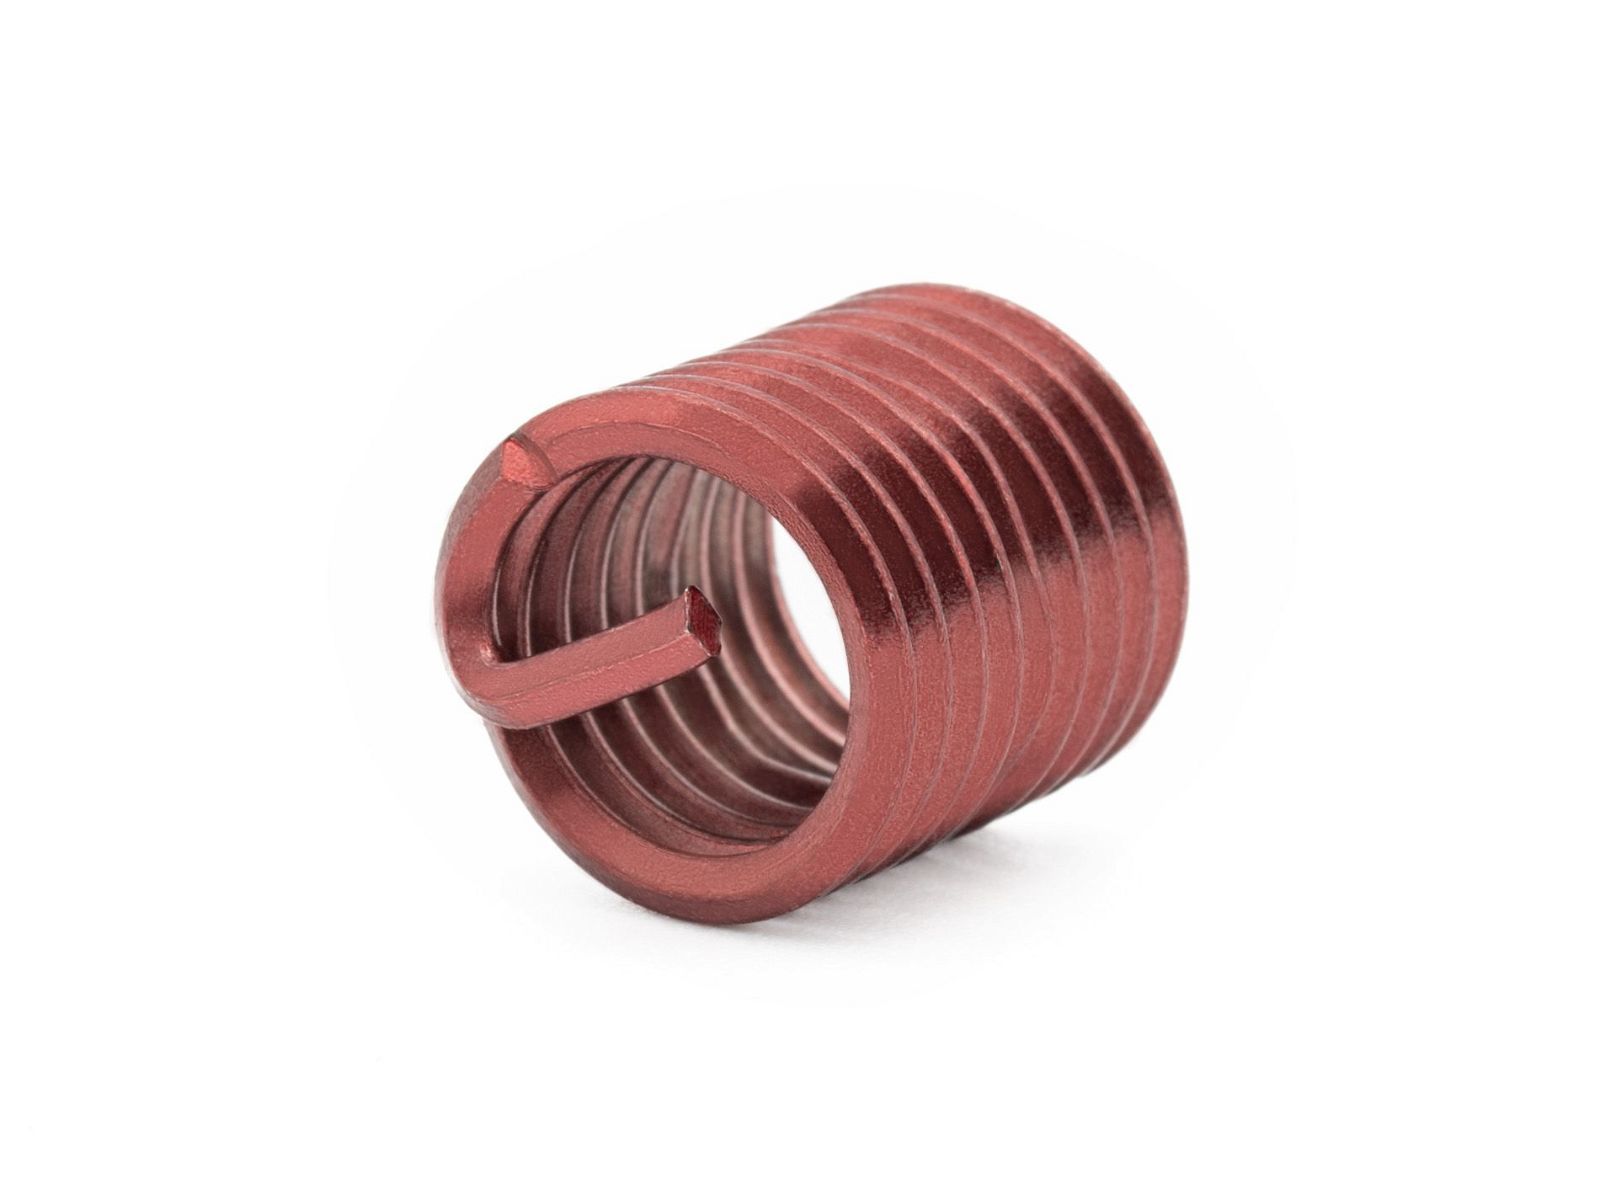 BaerCoil Wire Thread Inserts M 12 x 1.75 - 1.5 D (18 mm) - screw grip (screw locking) - 10 pcs.